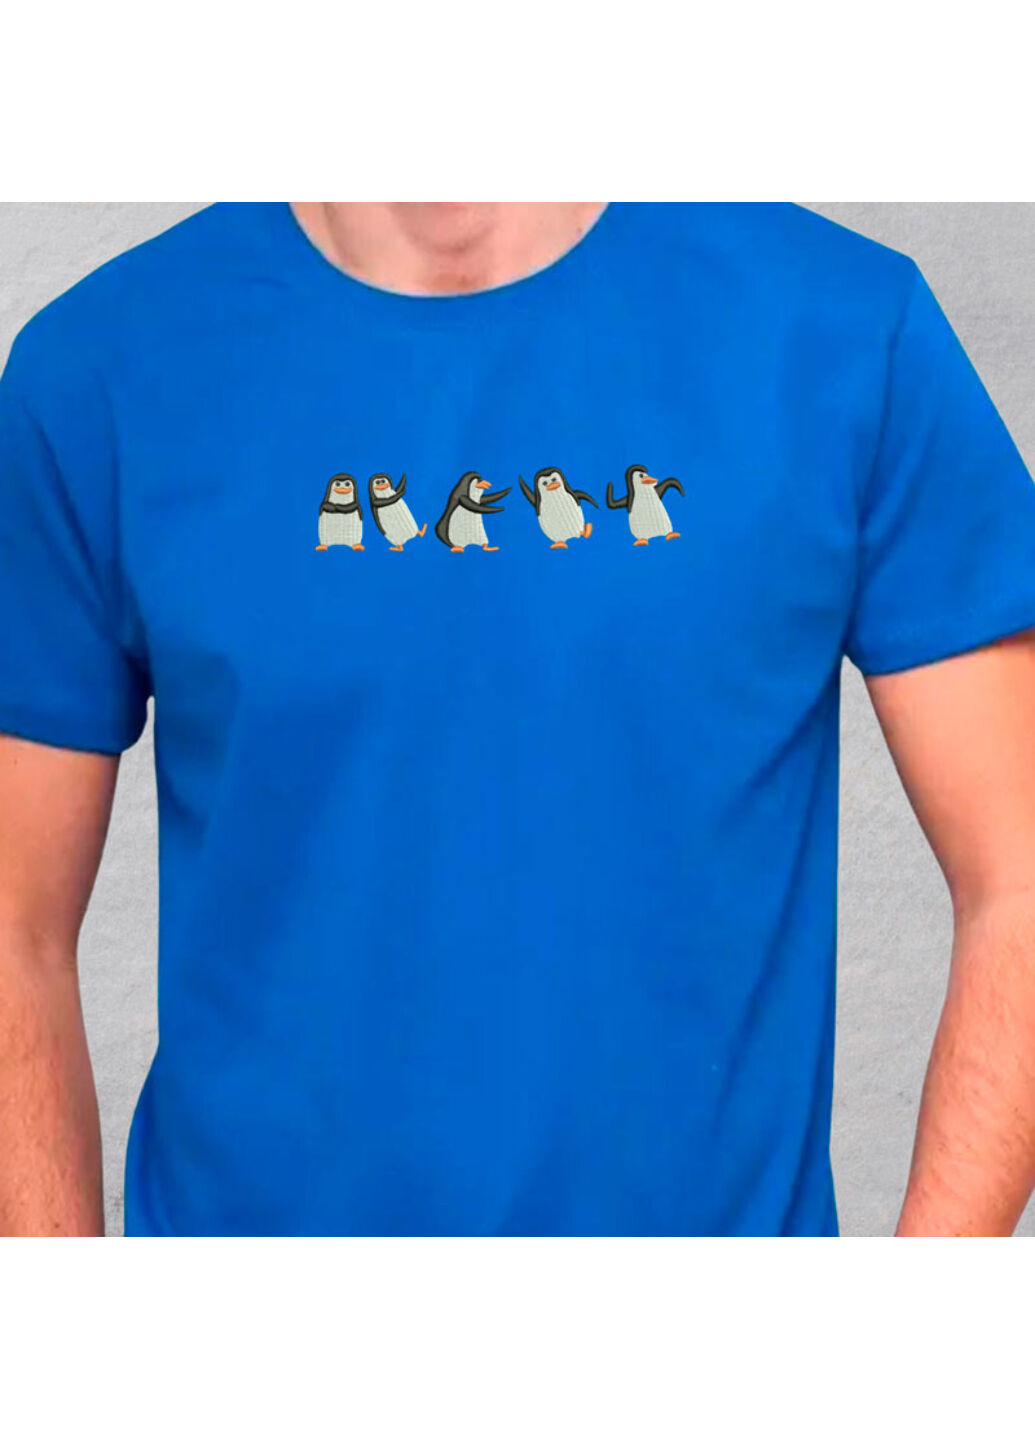 Синяя футболка с вышивкой пингвинов 01-3 мужская синий xl No Brand